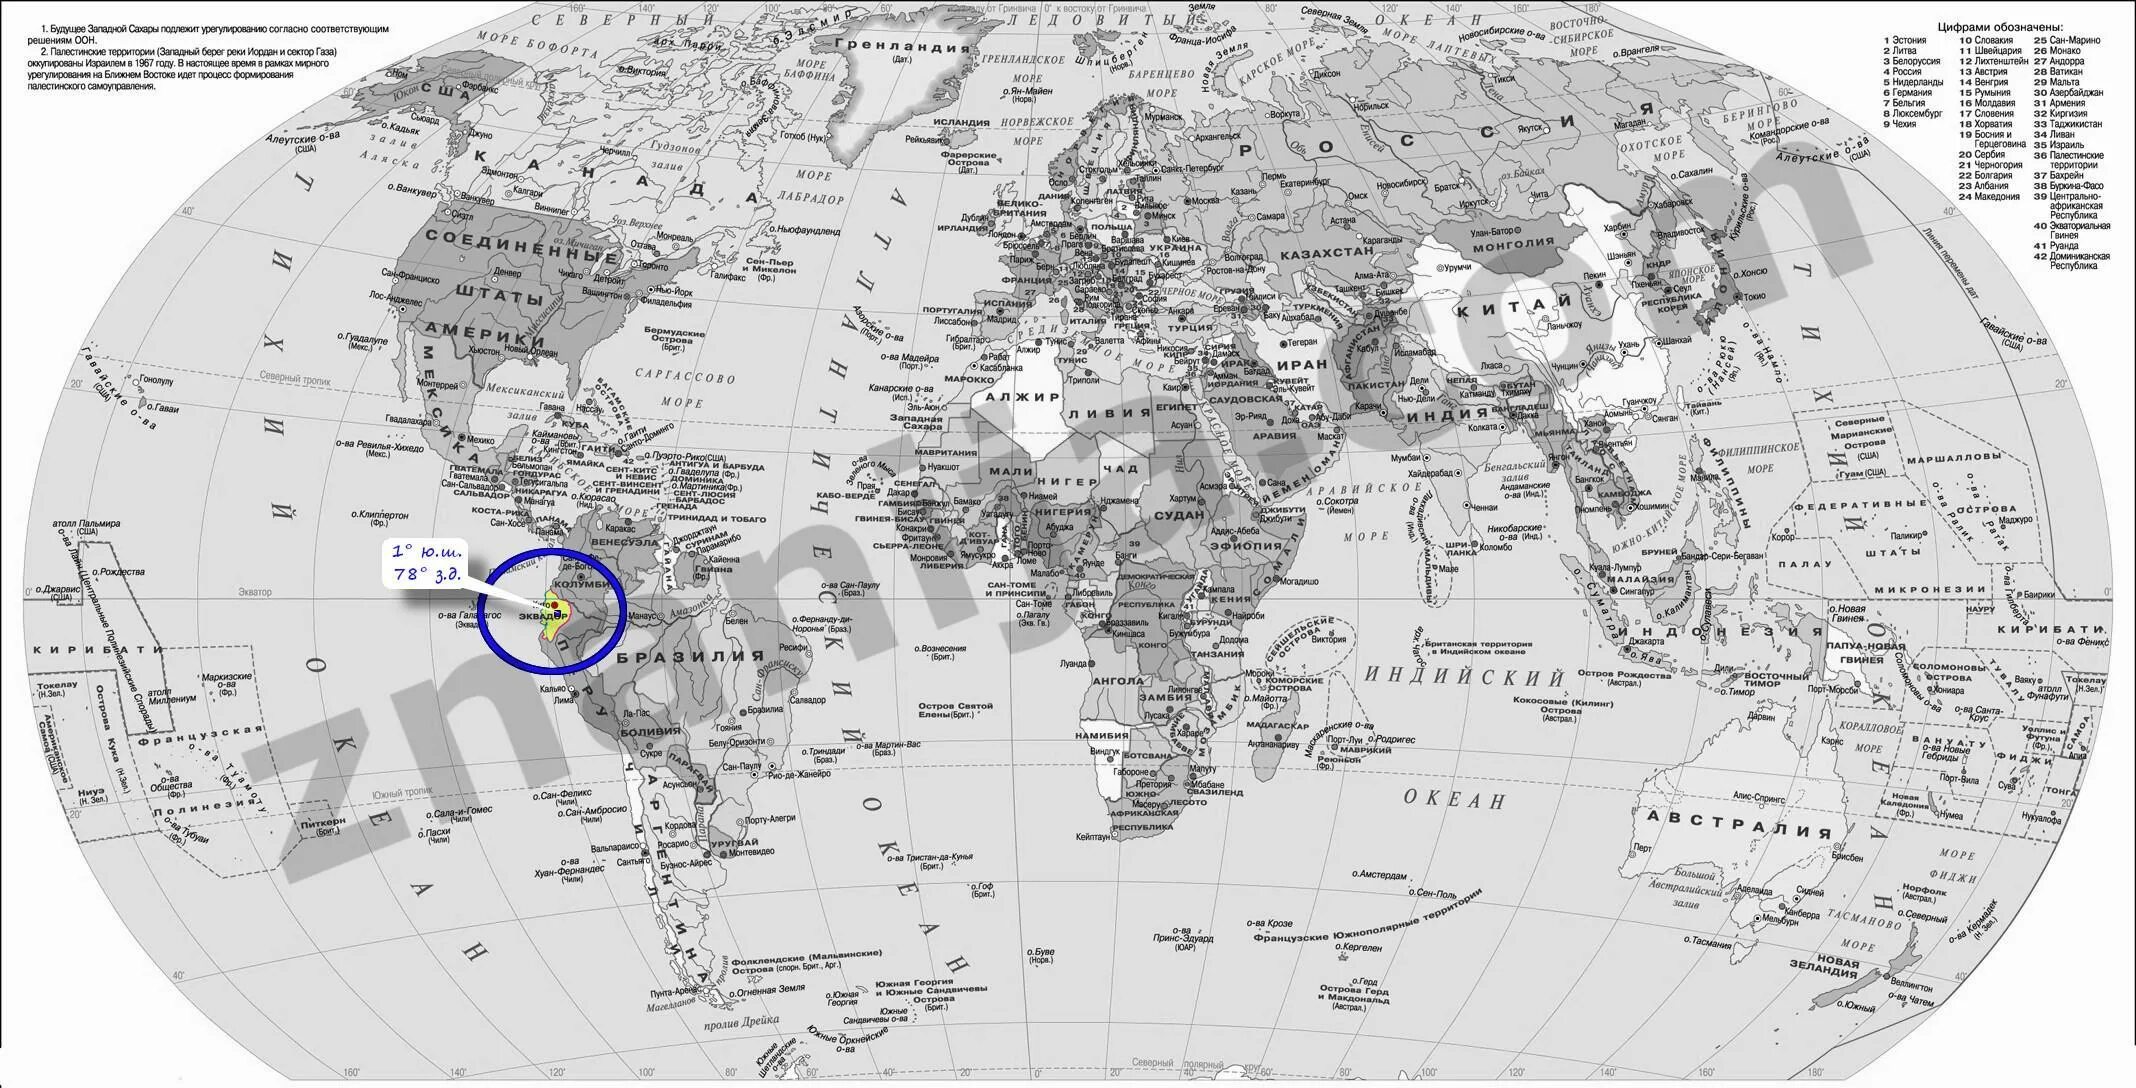 19 ю ш 68 з д. Географические координаты. 12 Южной широты 77 Западной долготы карта. Карта планеты с ш и д. Карта с координатами.